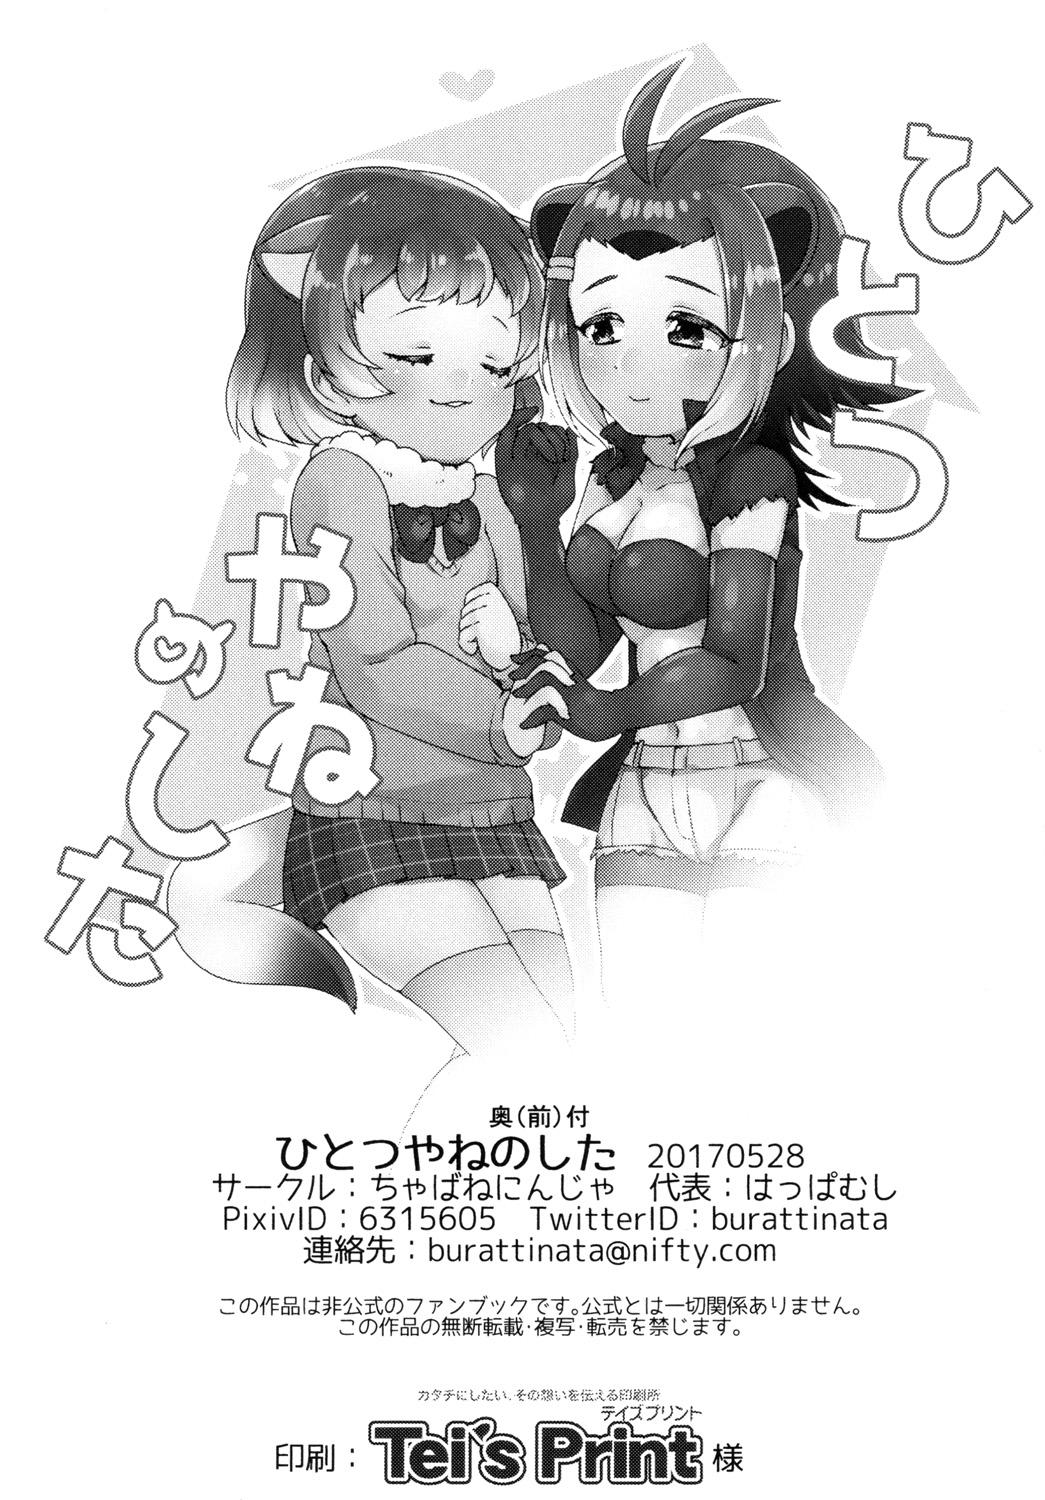 No Condom Hitotsu Yane no Shita - Kemono friends Transexual - Page 3